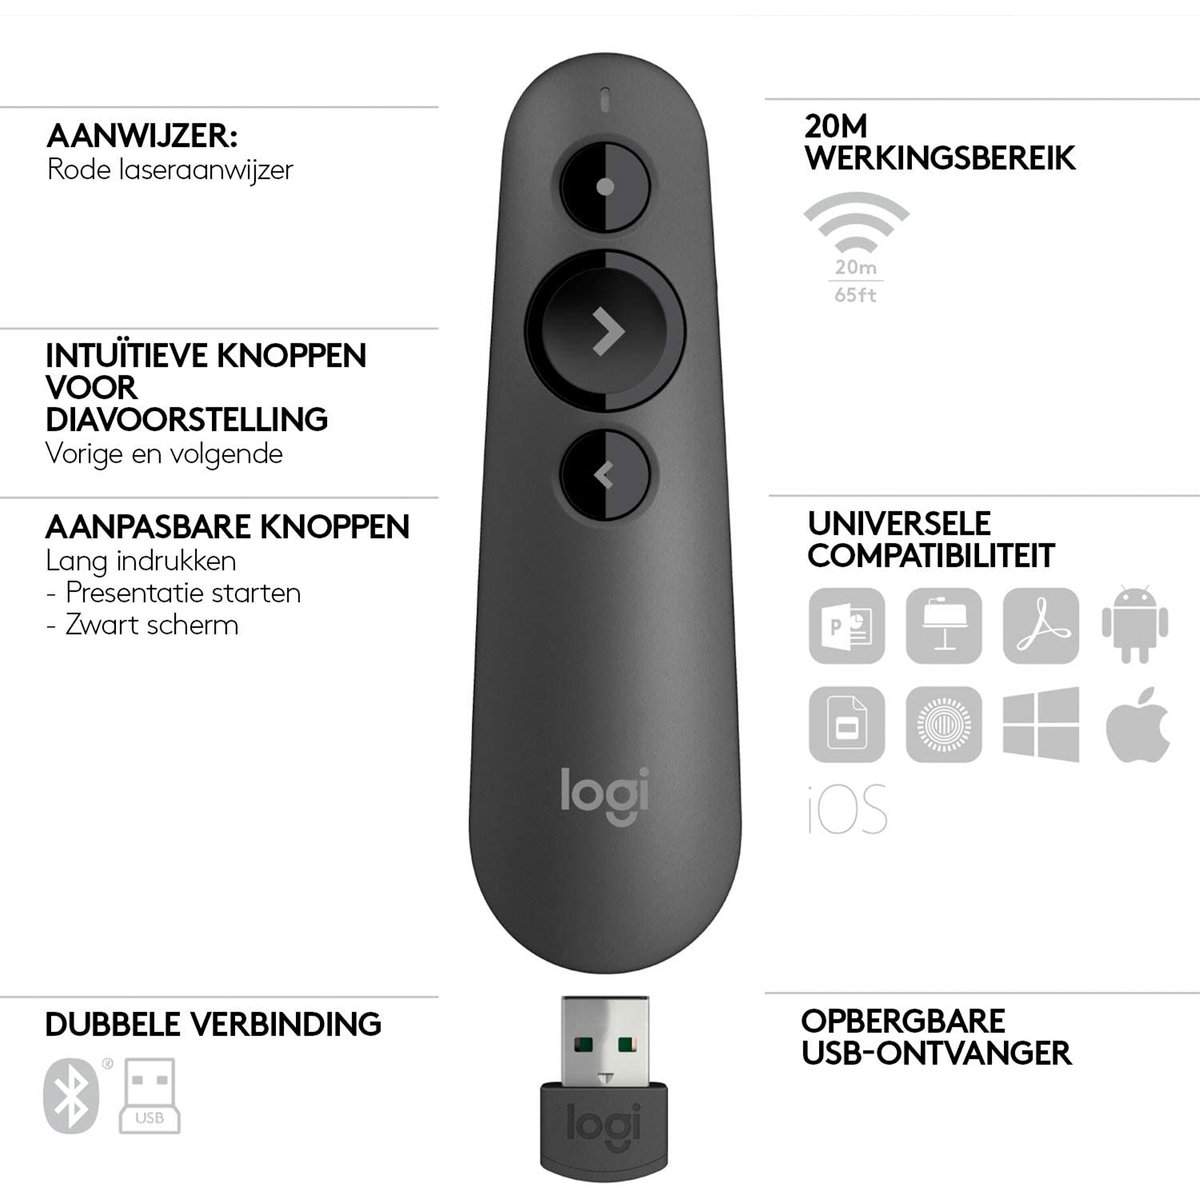 Logitech R500 Wireless Presentation Remote & Laser Pointer